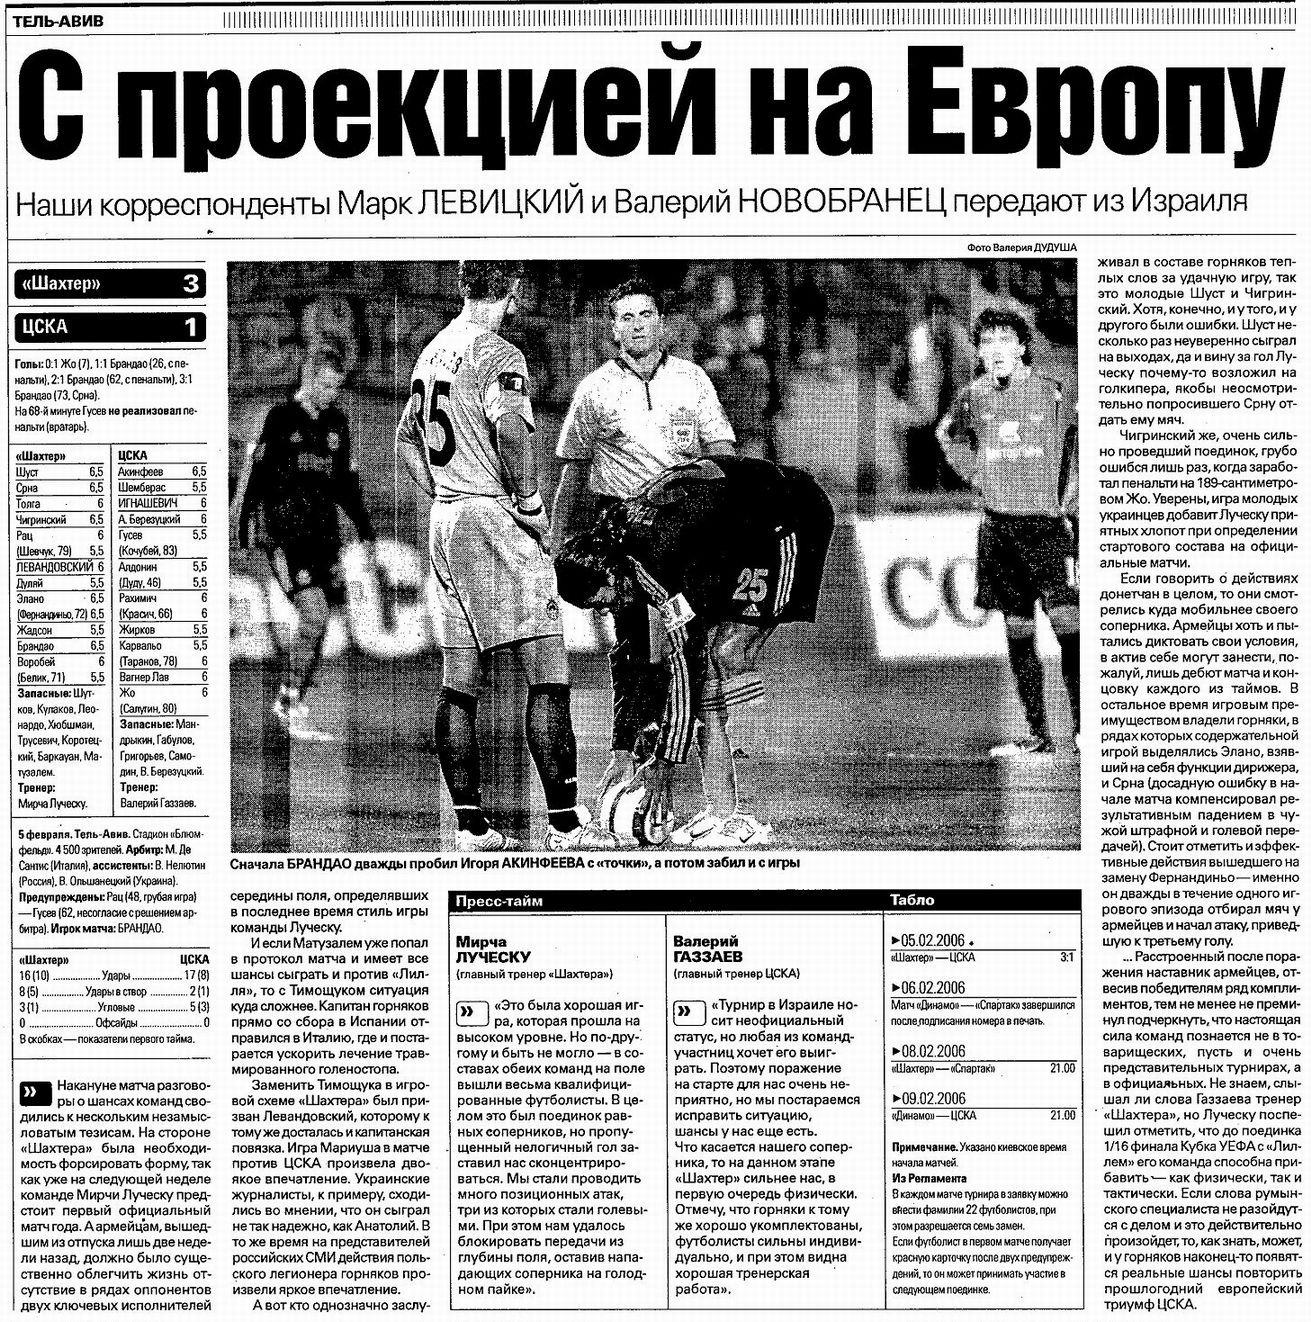 2006-02-05.Shakhter-CSKA.1